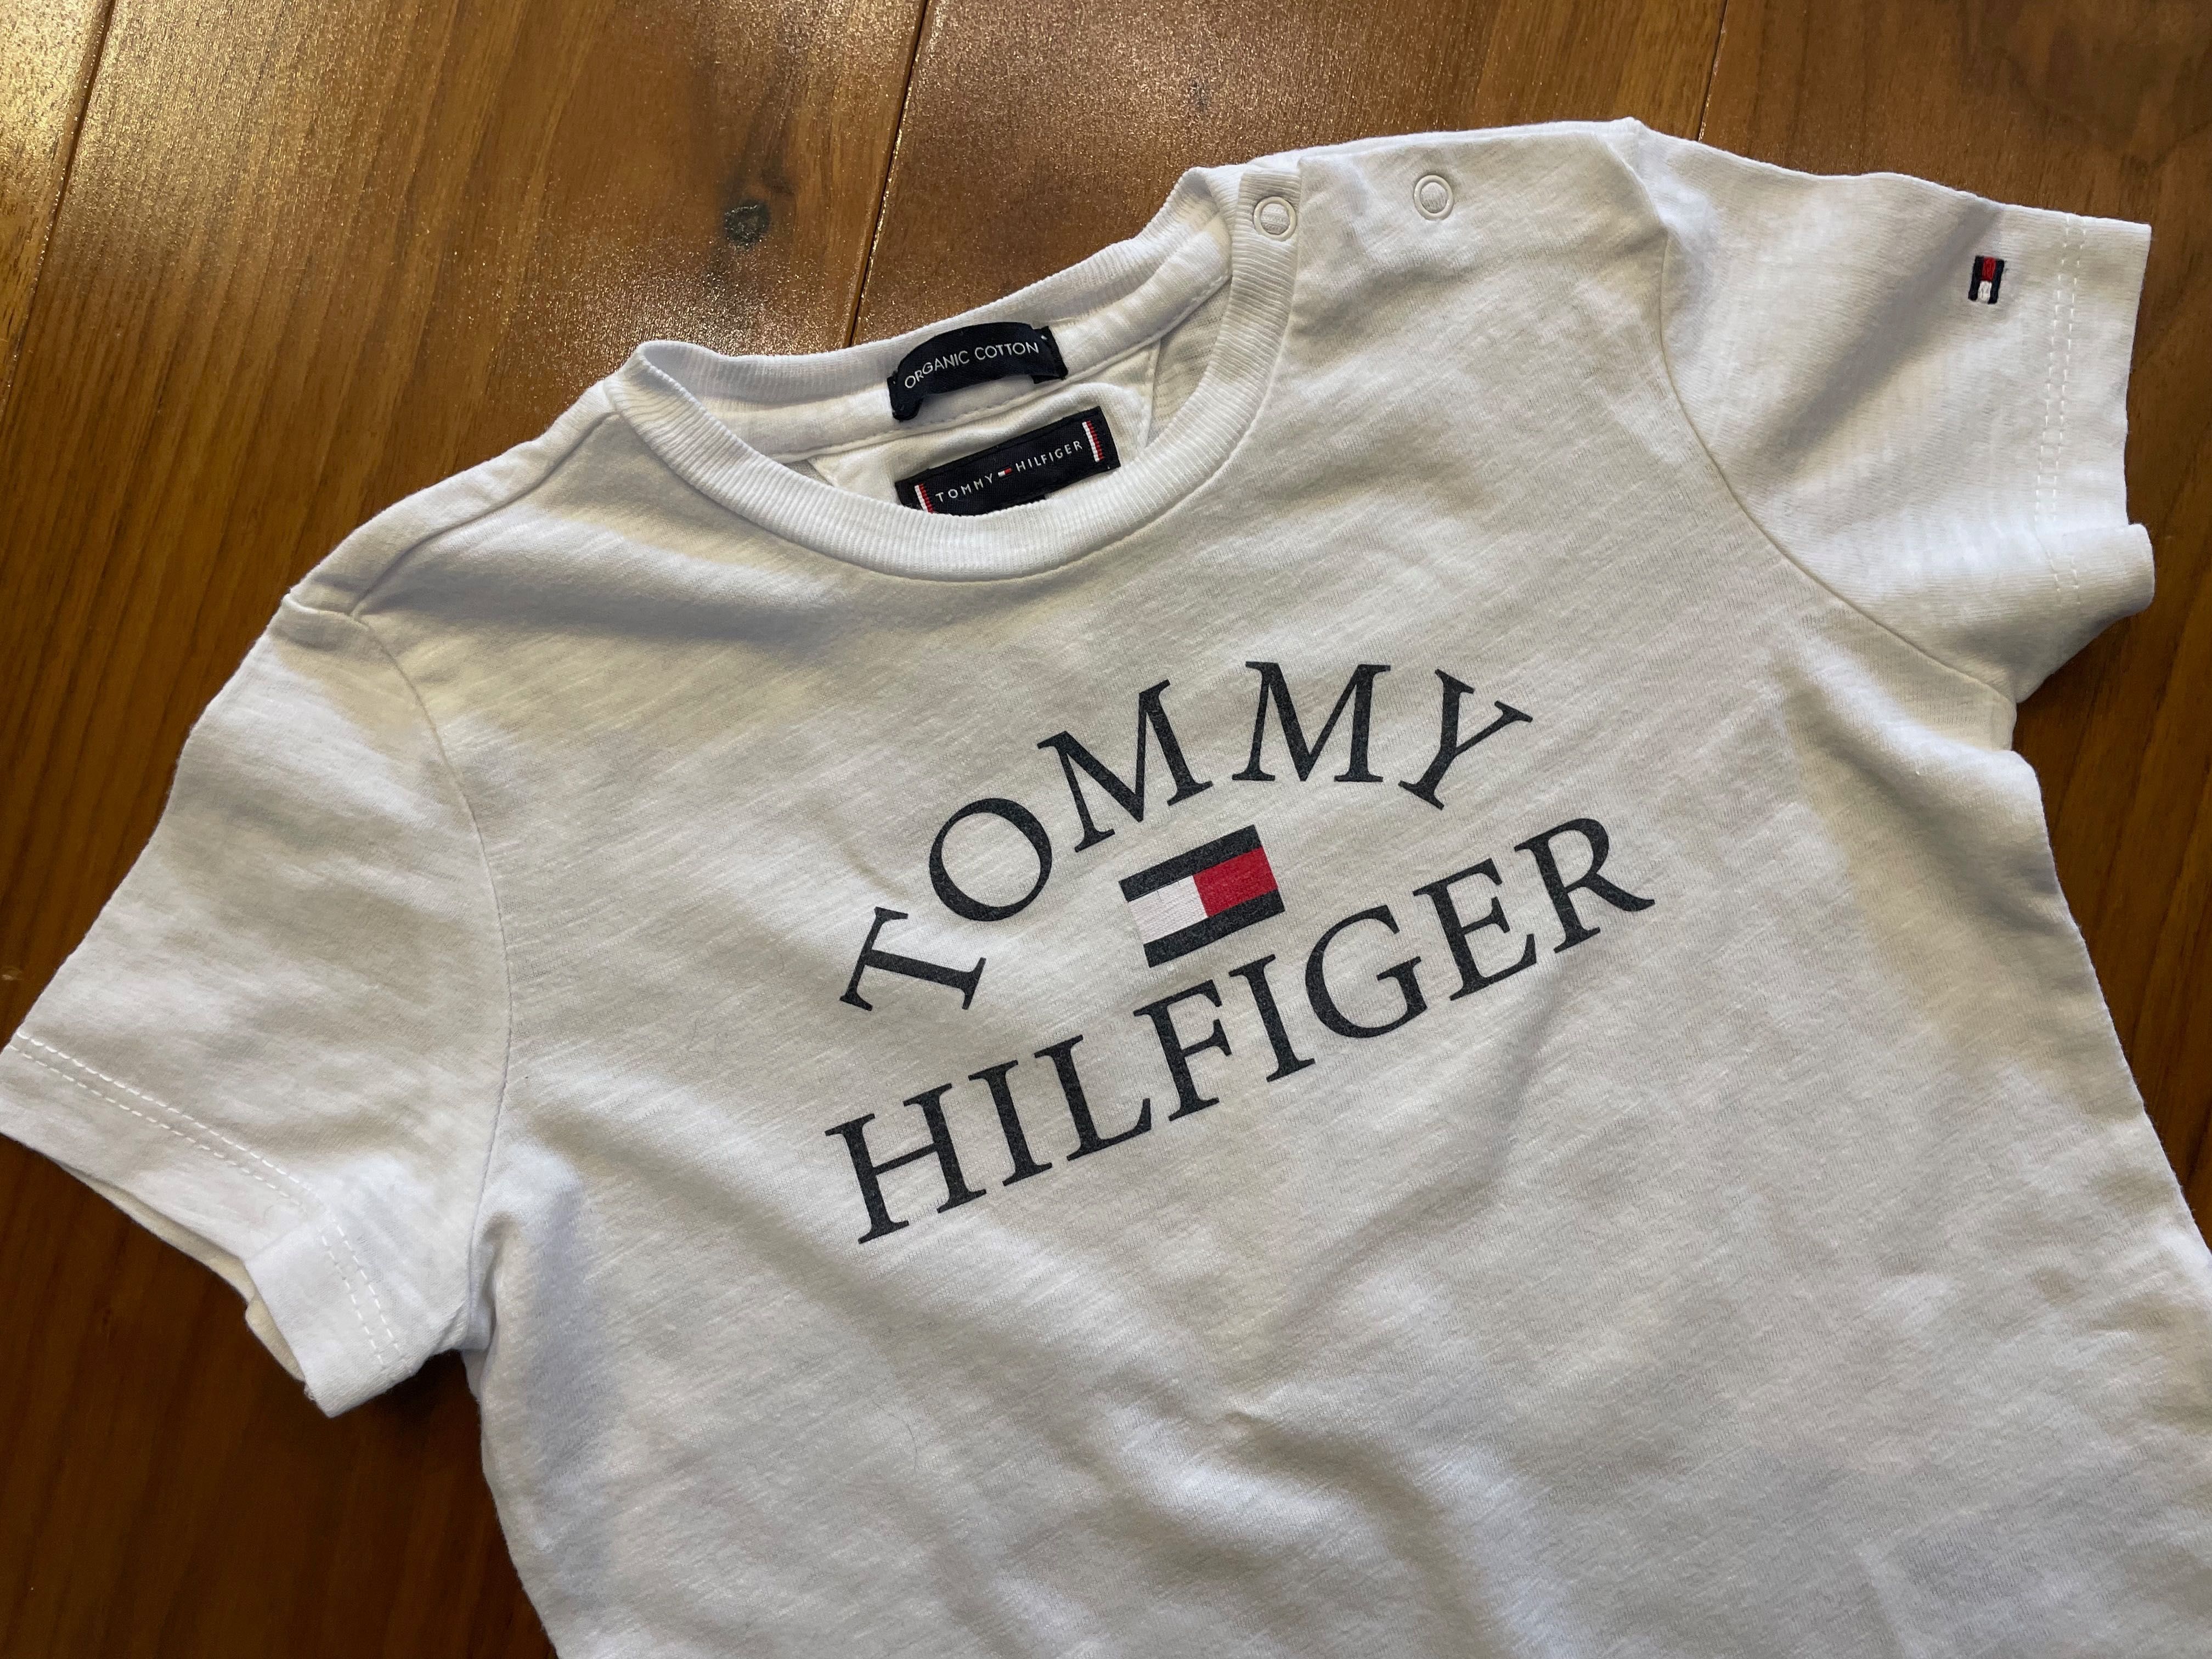 Tommy Hilfiger biała koszulka 92 cm